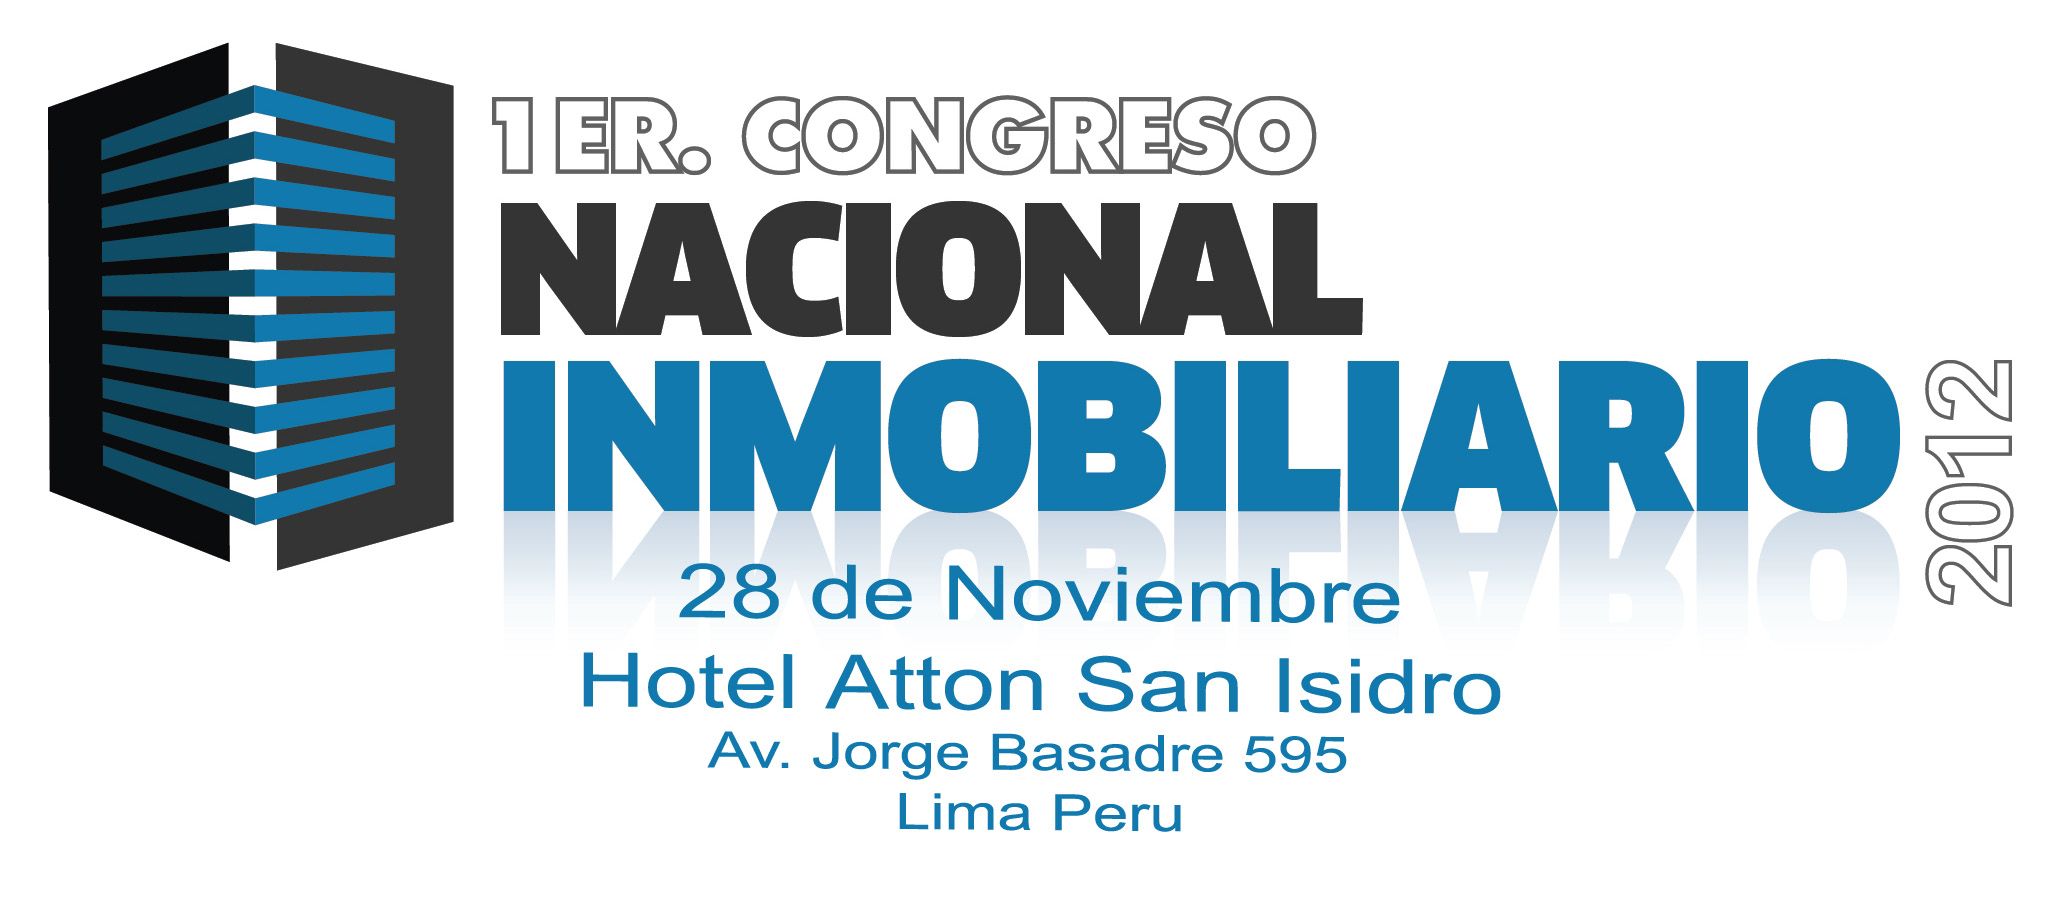 Congreso Nacional Inmobiliario Perú 2012